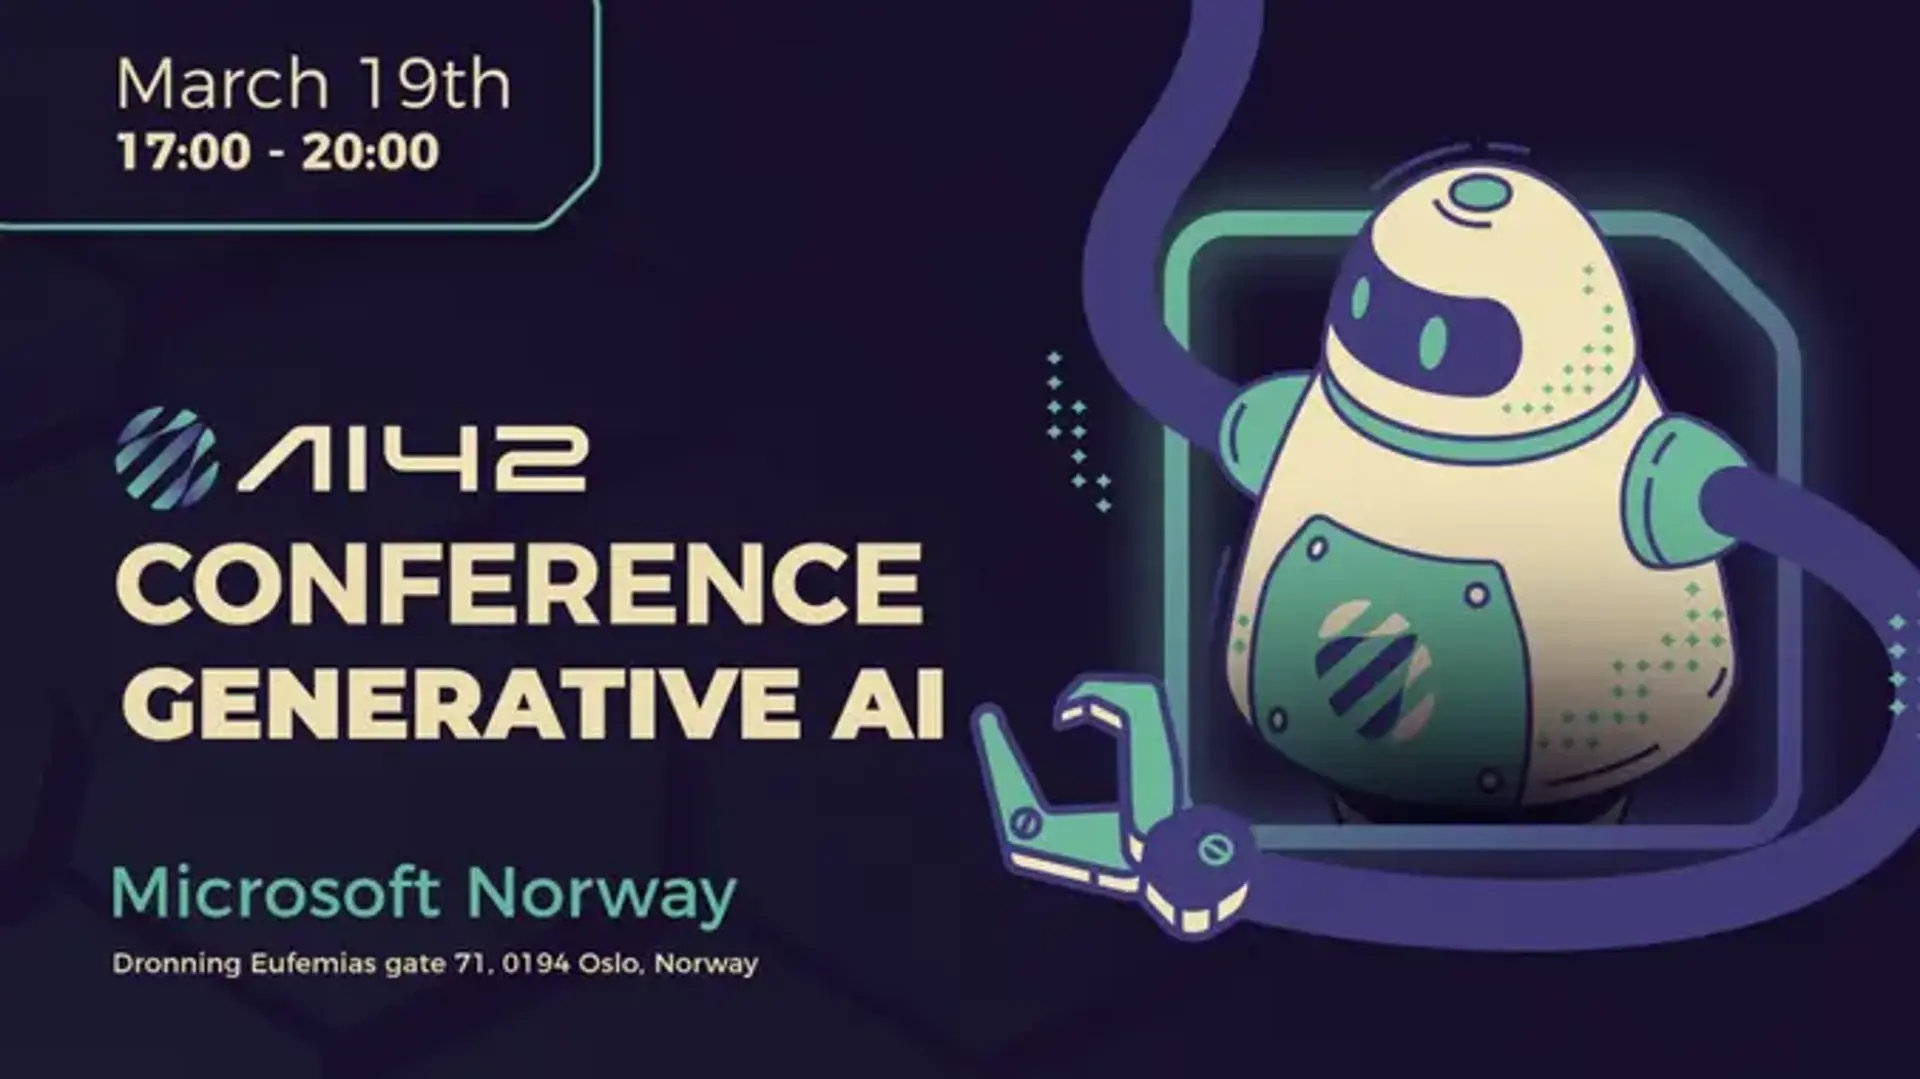 AI42 Conference on Generative AI [In-person]